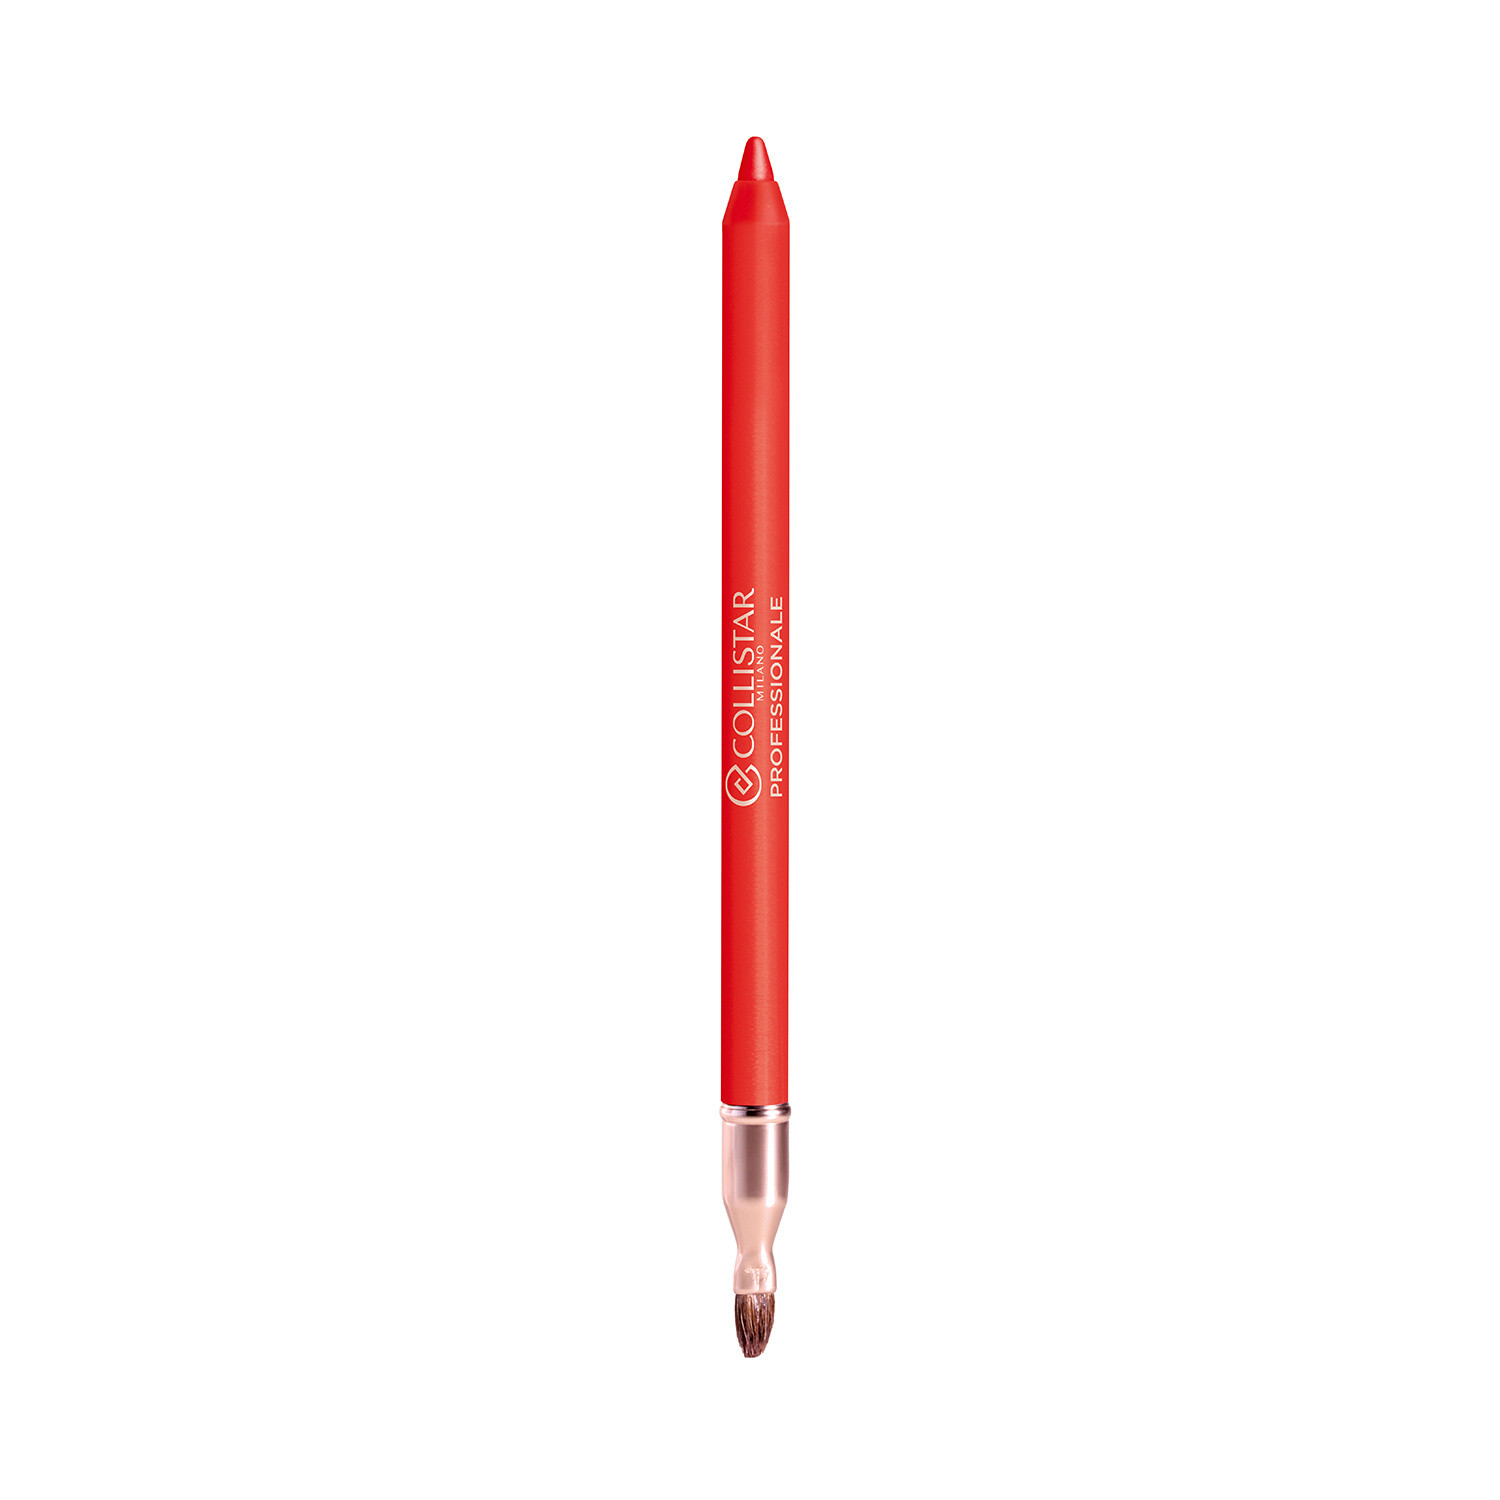 Collistar - Professionale matita labbra lunga durata - 40 Mandarino, Arancione, large image number 1